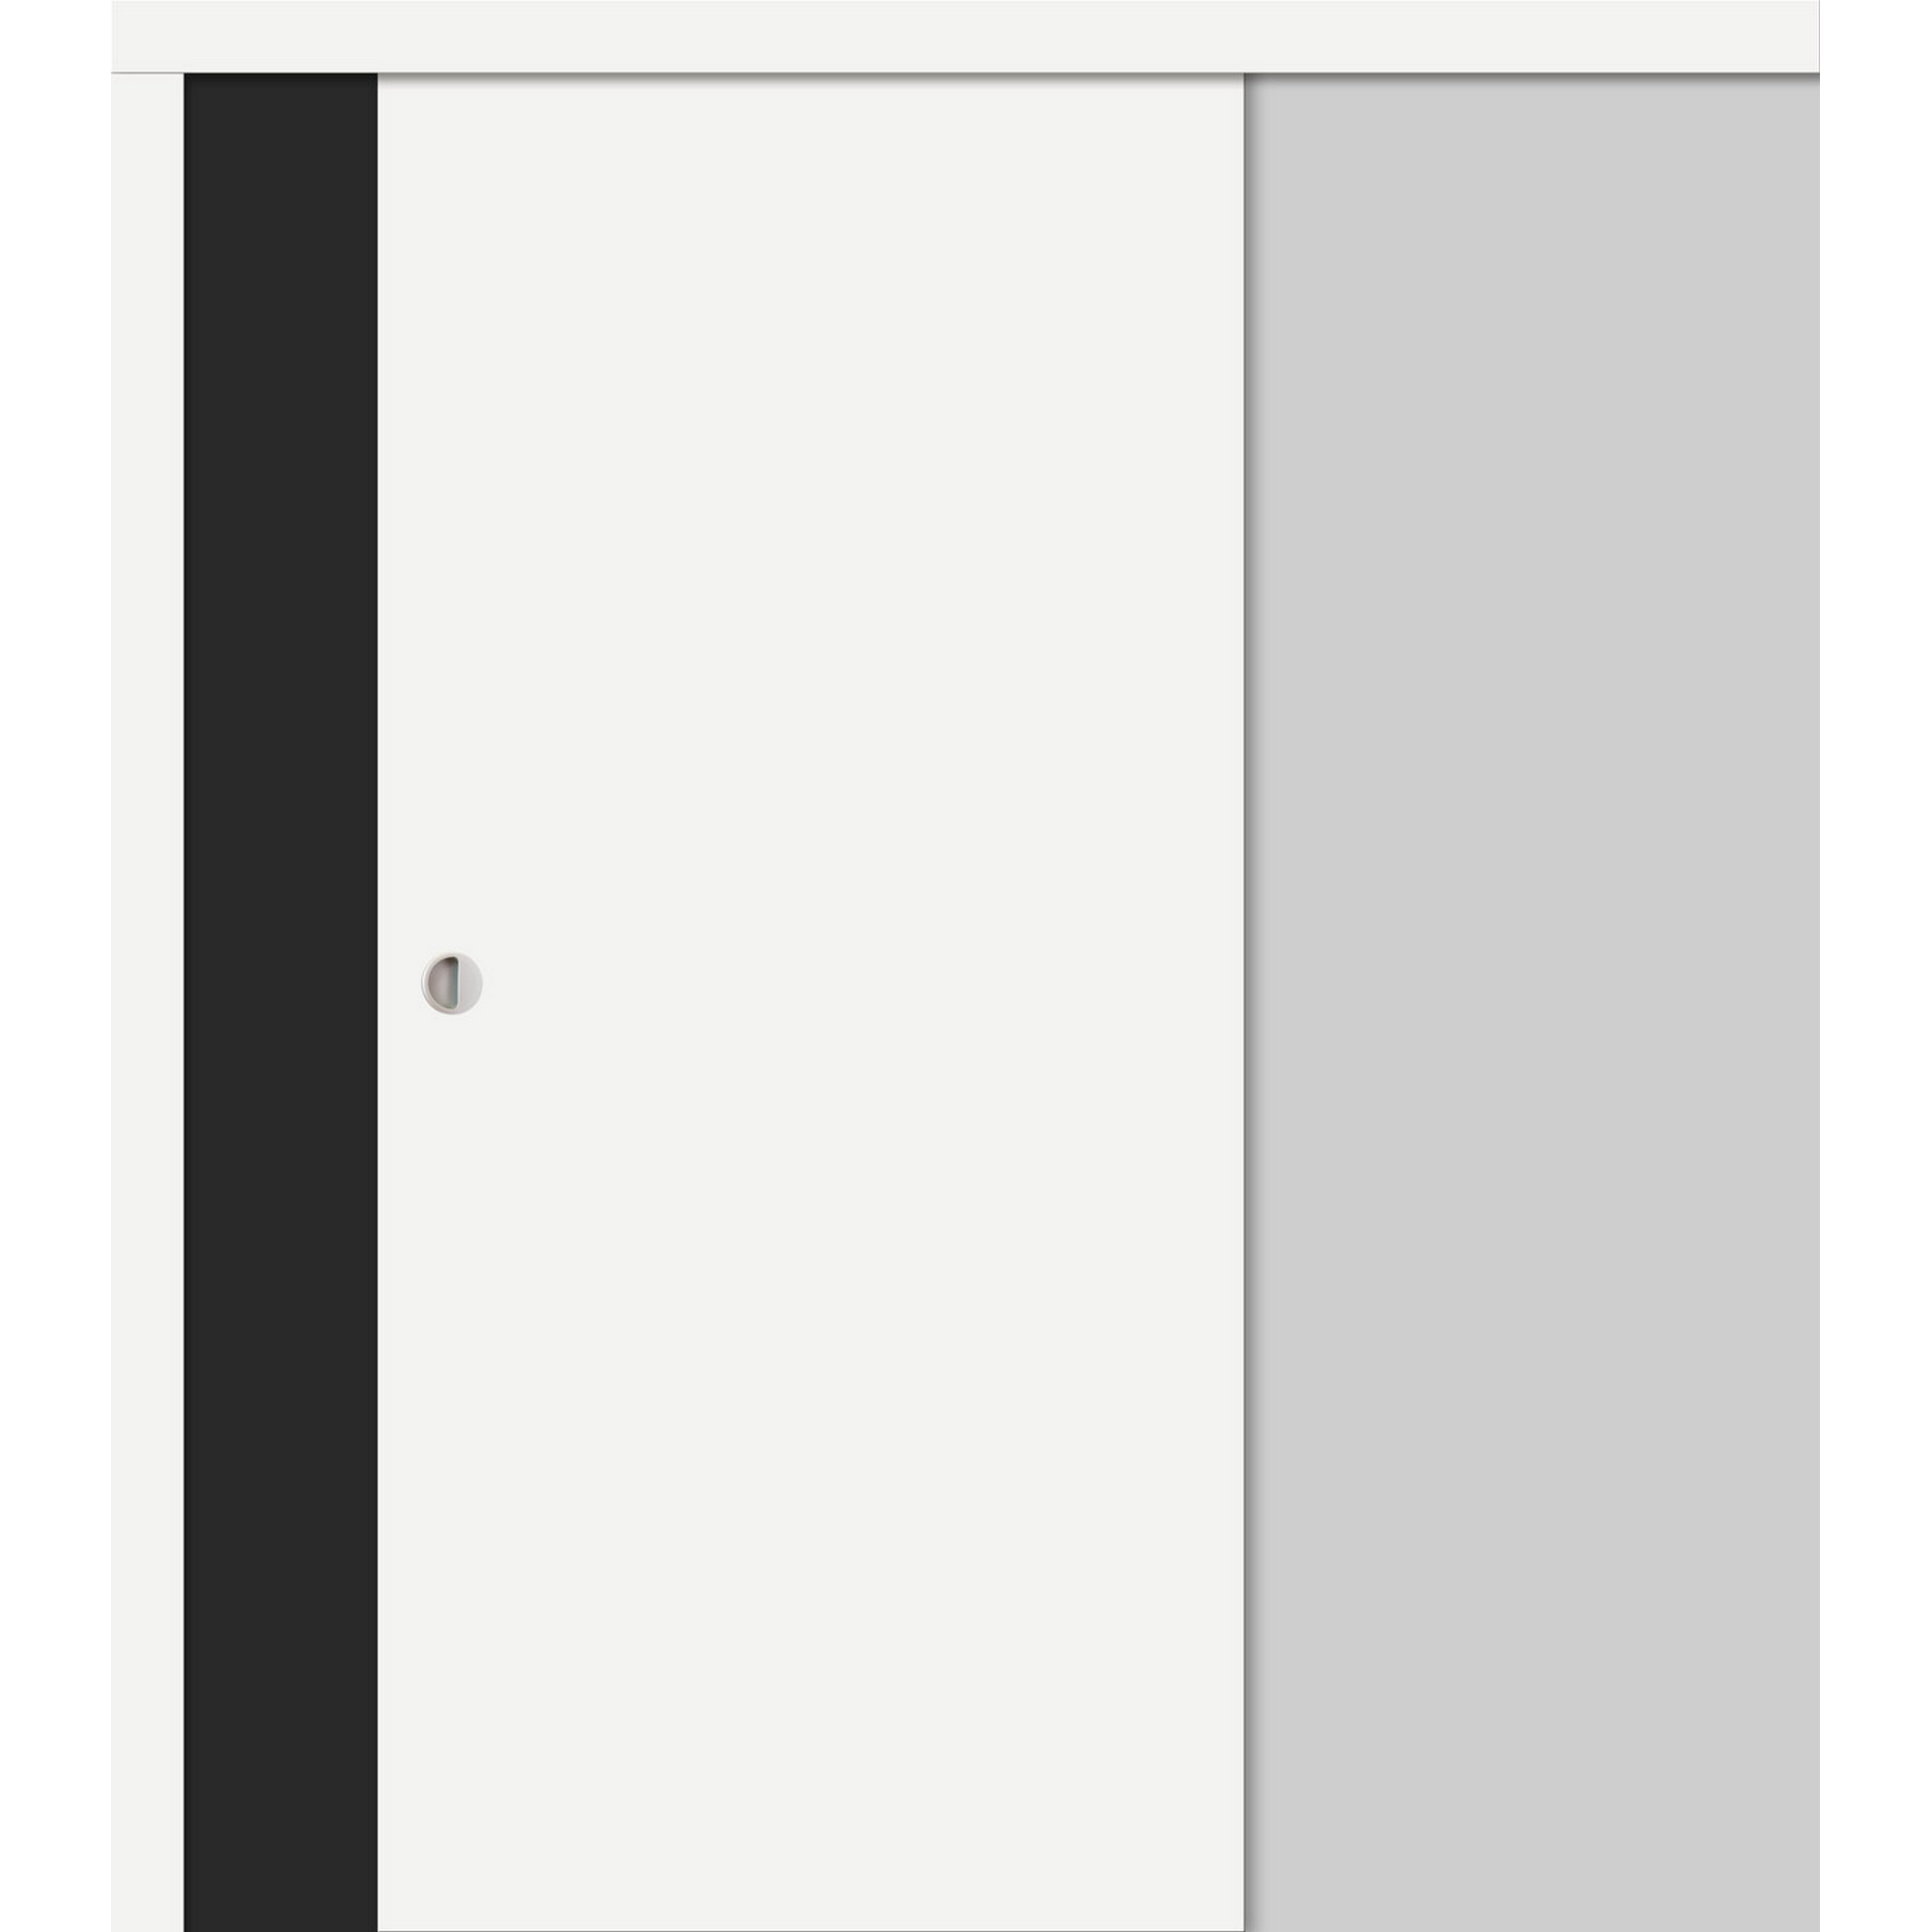 Schiebetür foliert weiß 203,5 x 94,4 cm + product picture